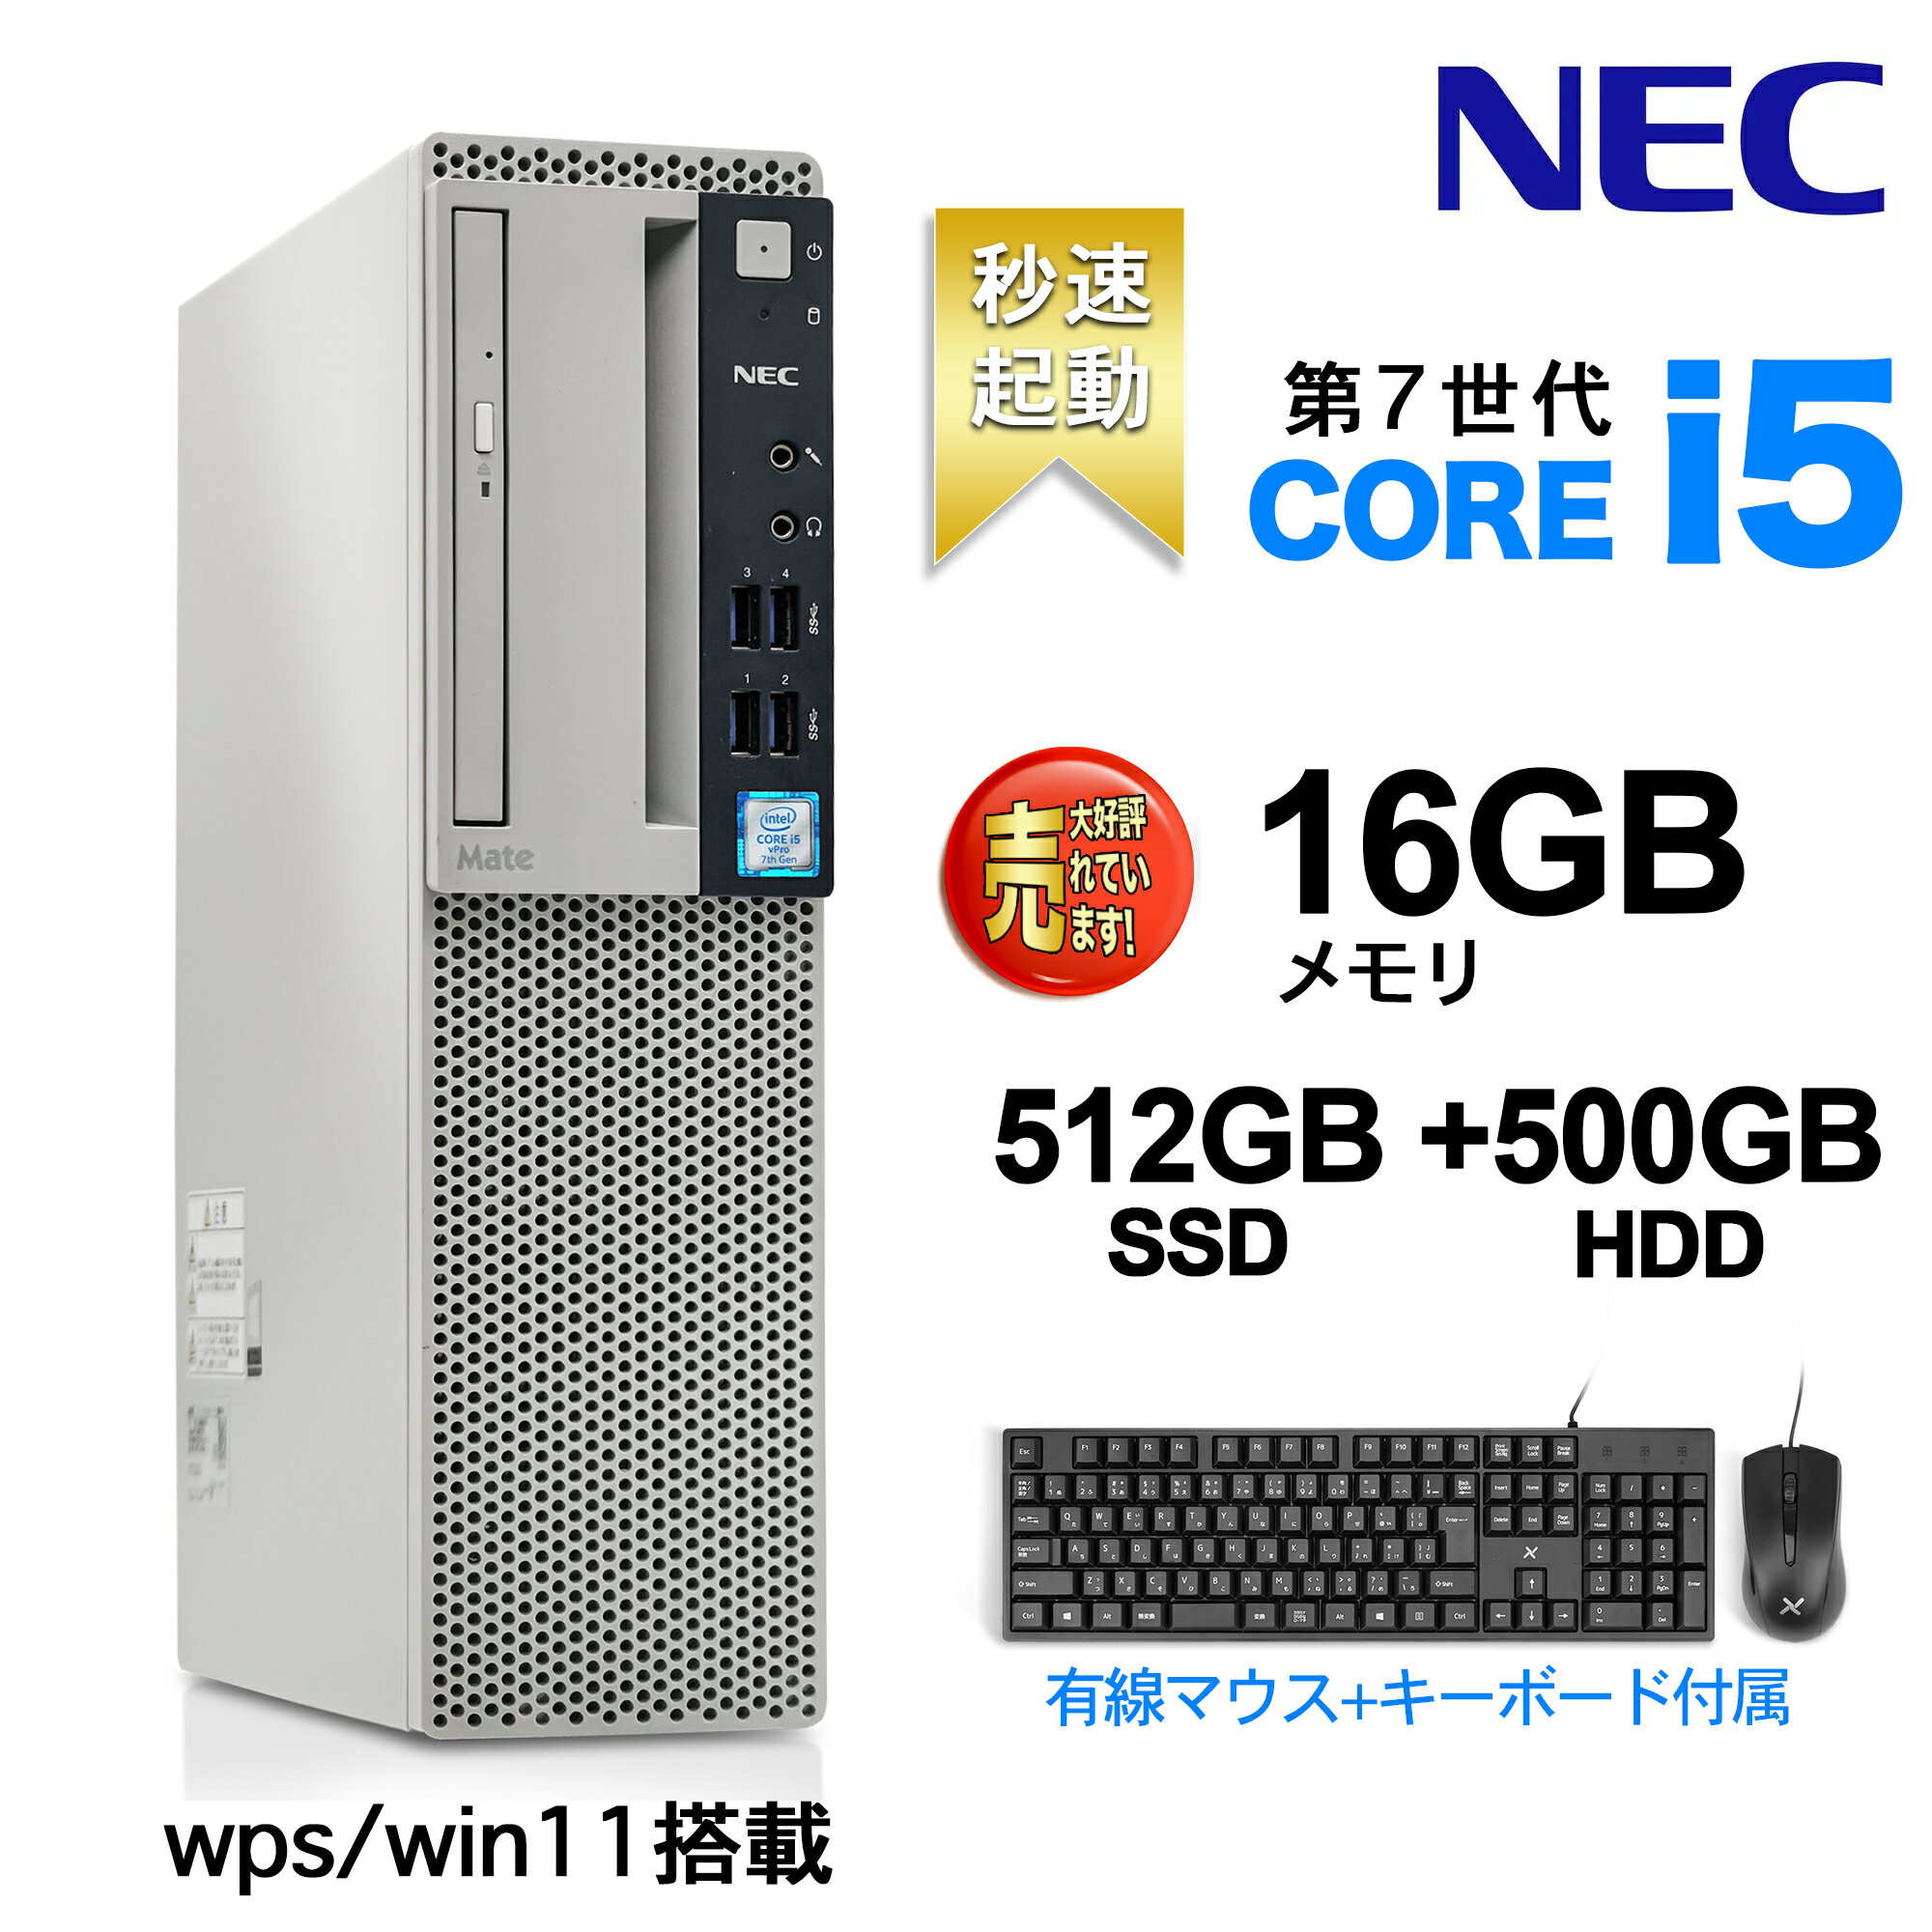 デスクトップパソコンWPS ofice付き Win 11搭載 NEC 国産大手メーカー 7500シリーズ 高性能第7世代 Core i5 4コア 3.4GHz 無線LAN/DVDドライブ/HDMI/USB3.0/KINGSOFTカード/<strong>有線キーボード</strong>とマウス付属 Desktop デスクトップパソコン デスクトップPC16GB/512GB +HDD___500GB